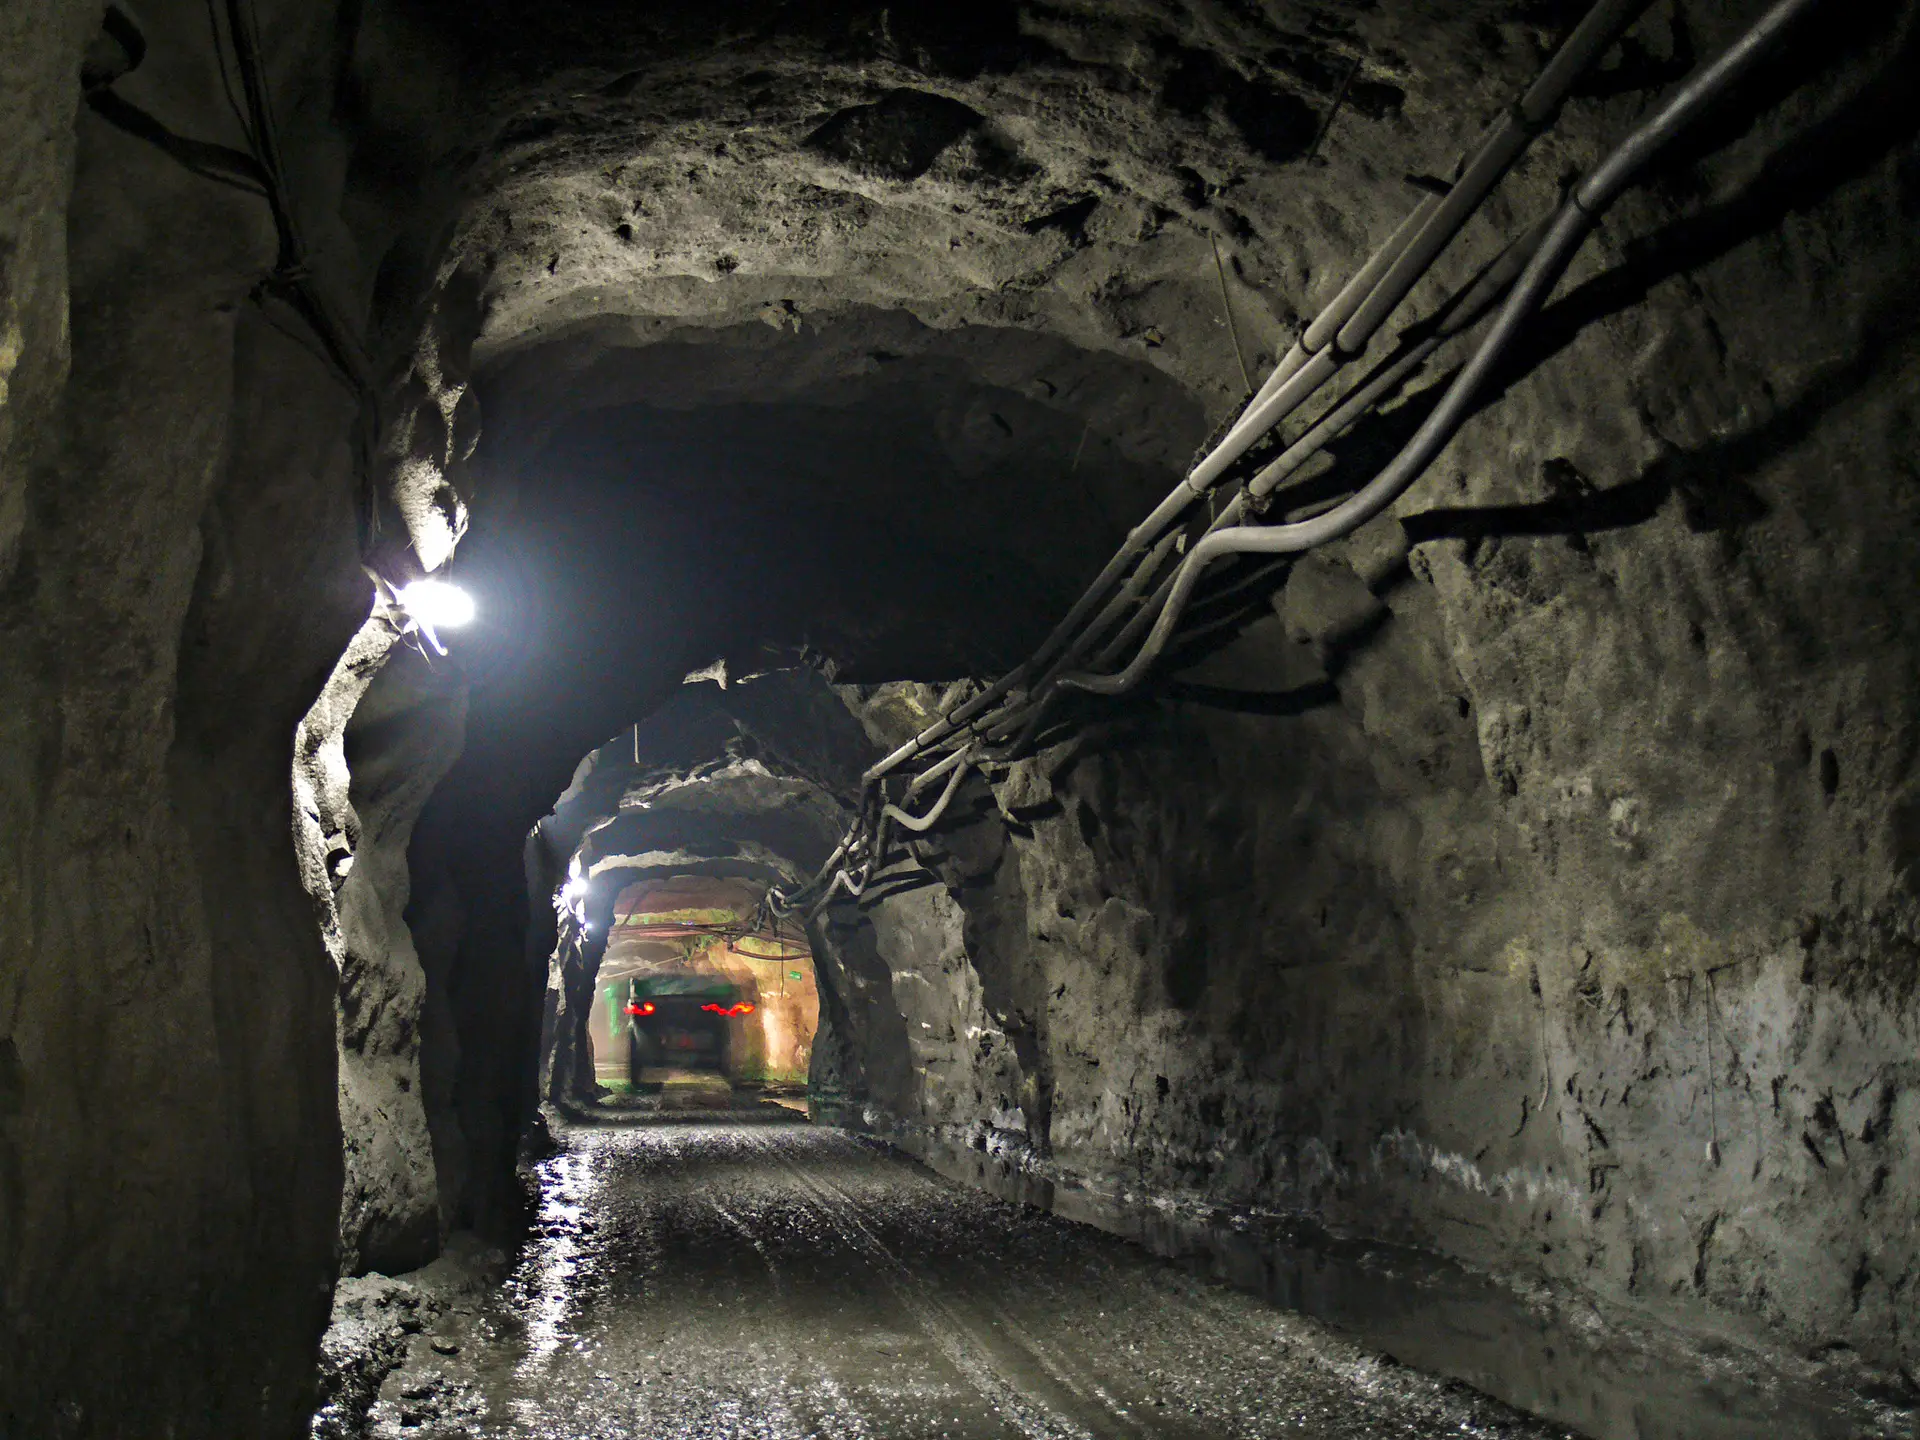 Bruxelas quer países a acelerar extração mineira: projetos estratégicos serão considerados de “interesse público”